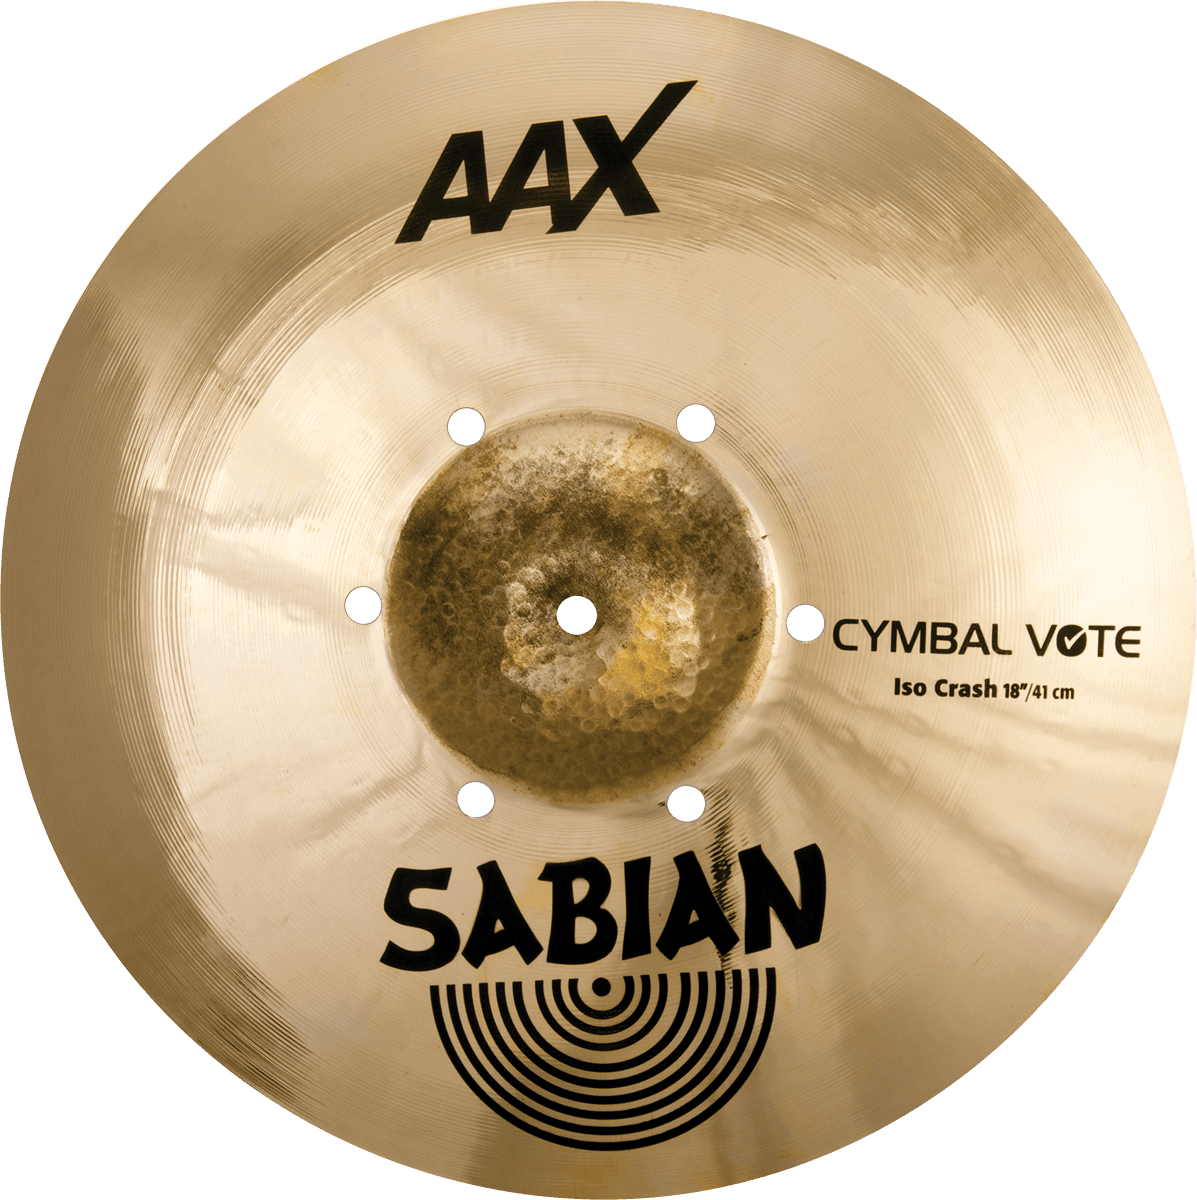 Sabian Aax   Cymbale Vote Iso Crash 18 - 18 Pouces - Crash bekken - Main picture